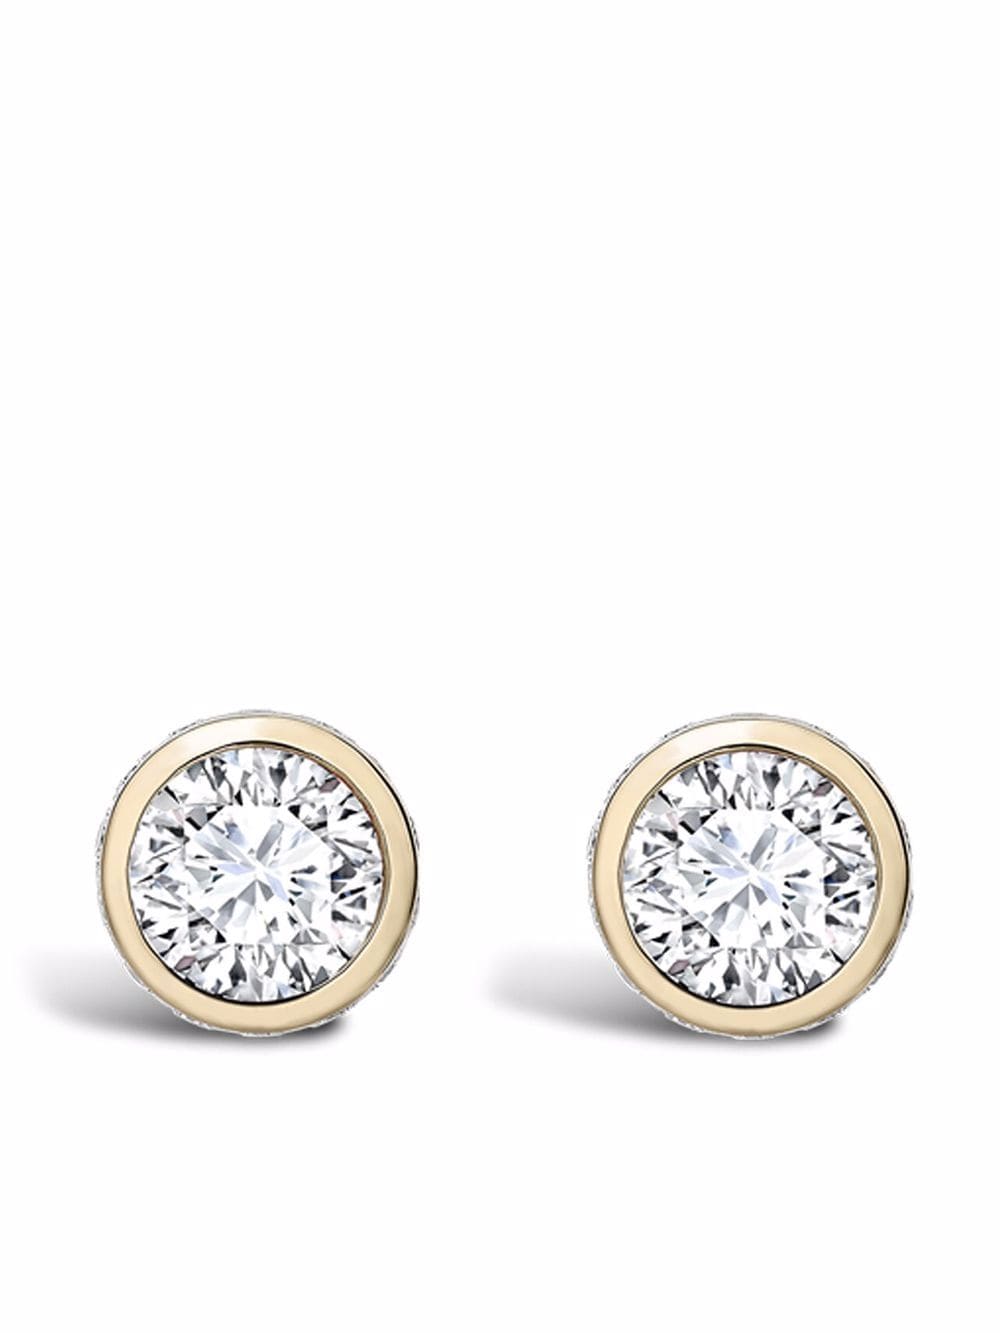 Image 1 of Pragnell 18kt yellow gold Sundance diamond stud earrings